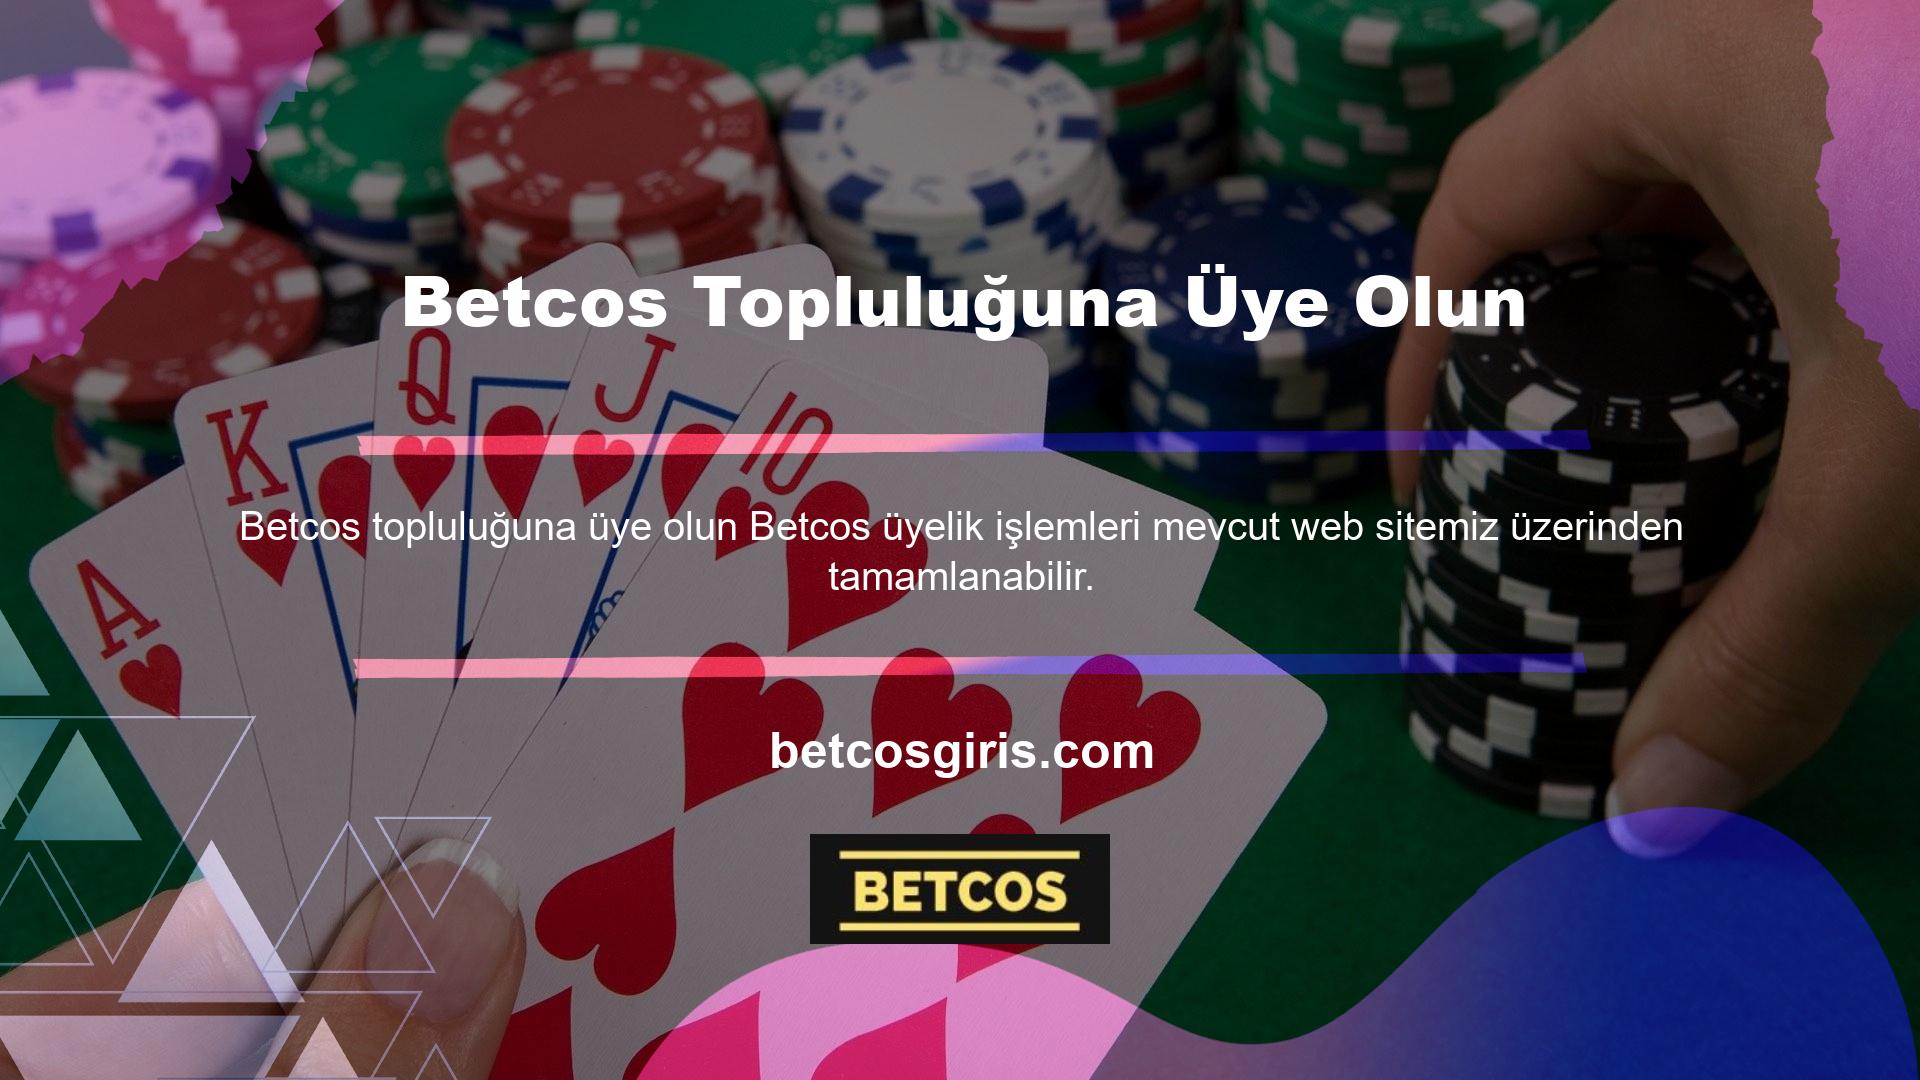 Poker sınıfı ve Betcos üye kaydı ile aynı prosedürü takip edebilirsiniz